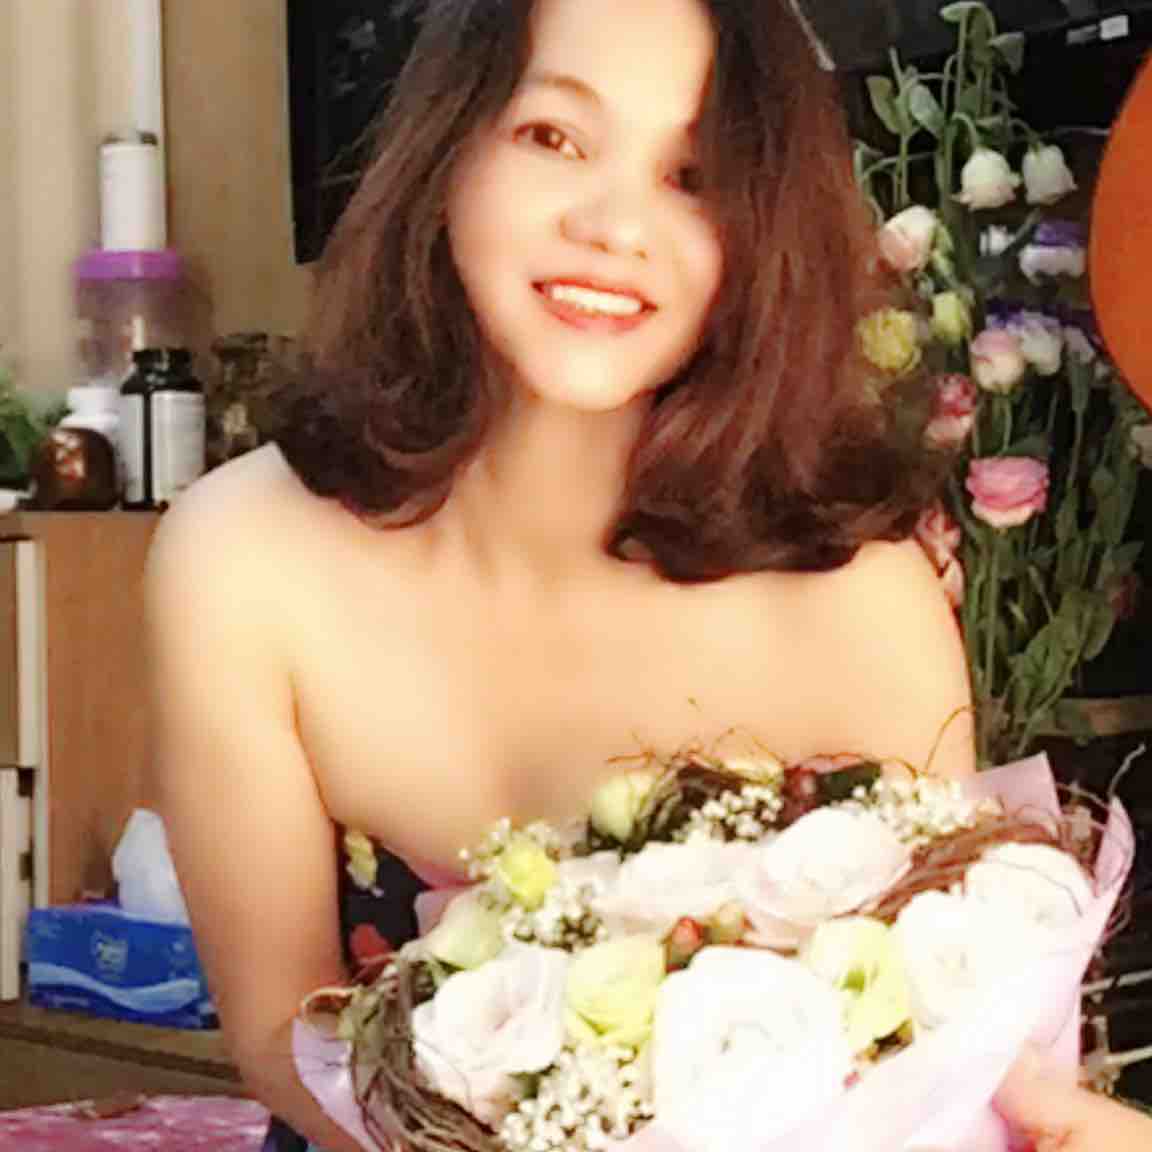 Thoa Nguyen